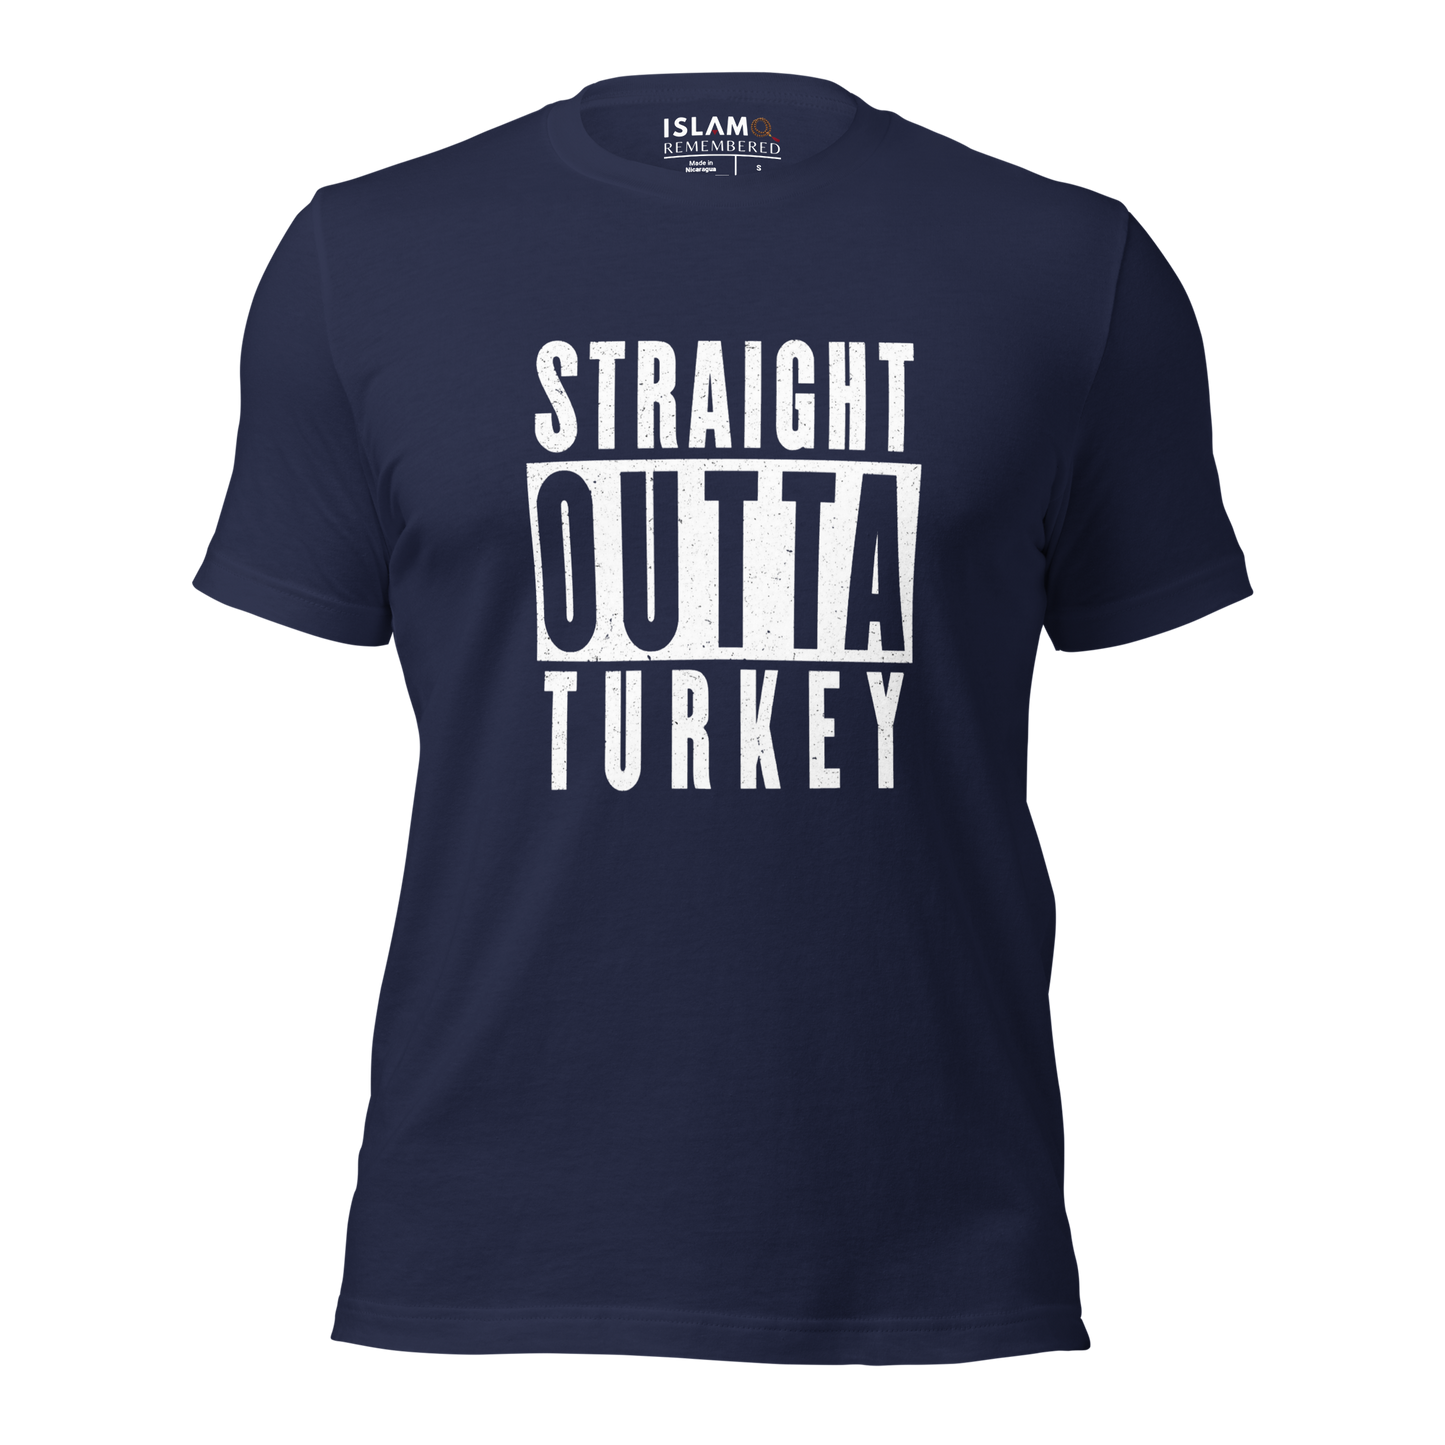 ADULT T-Shirt - STRAIGHT OUTTA TURKEY